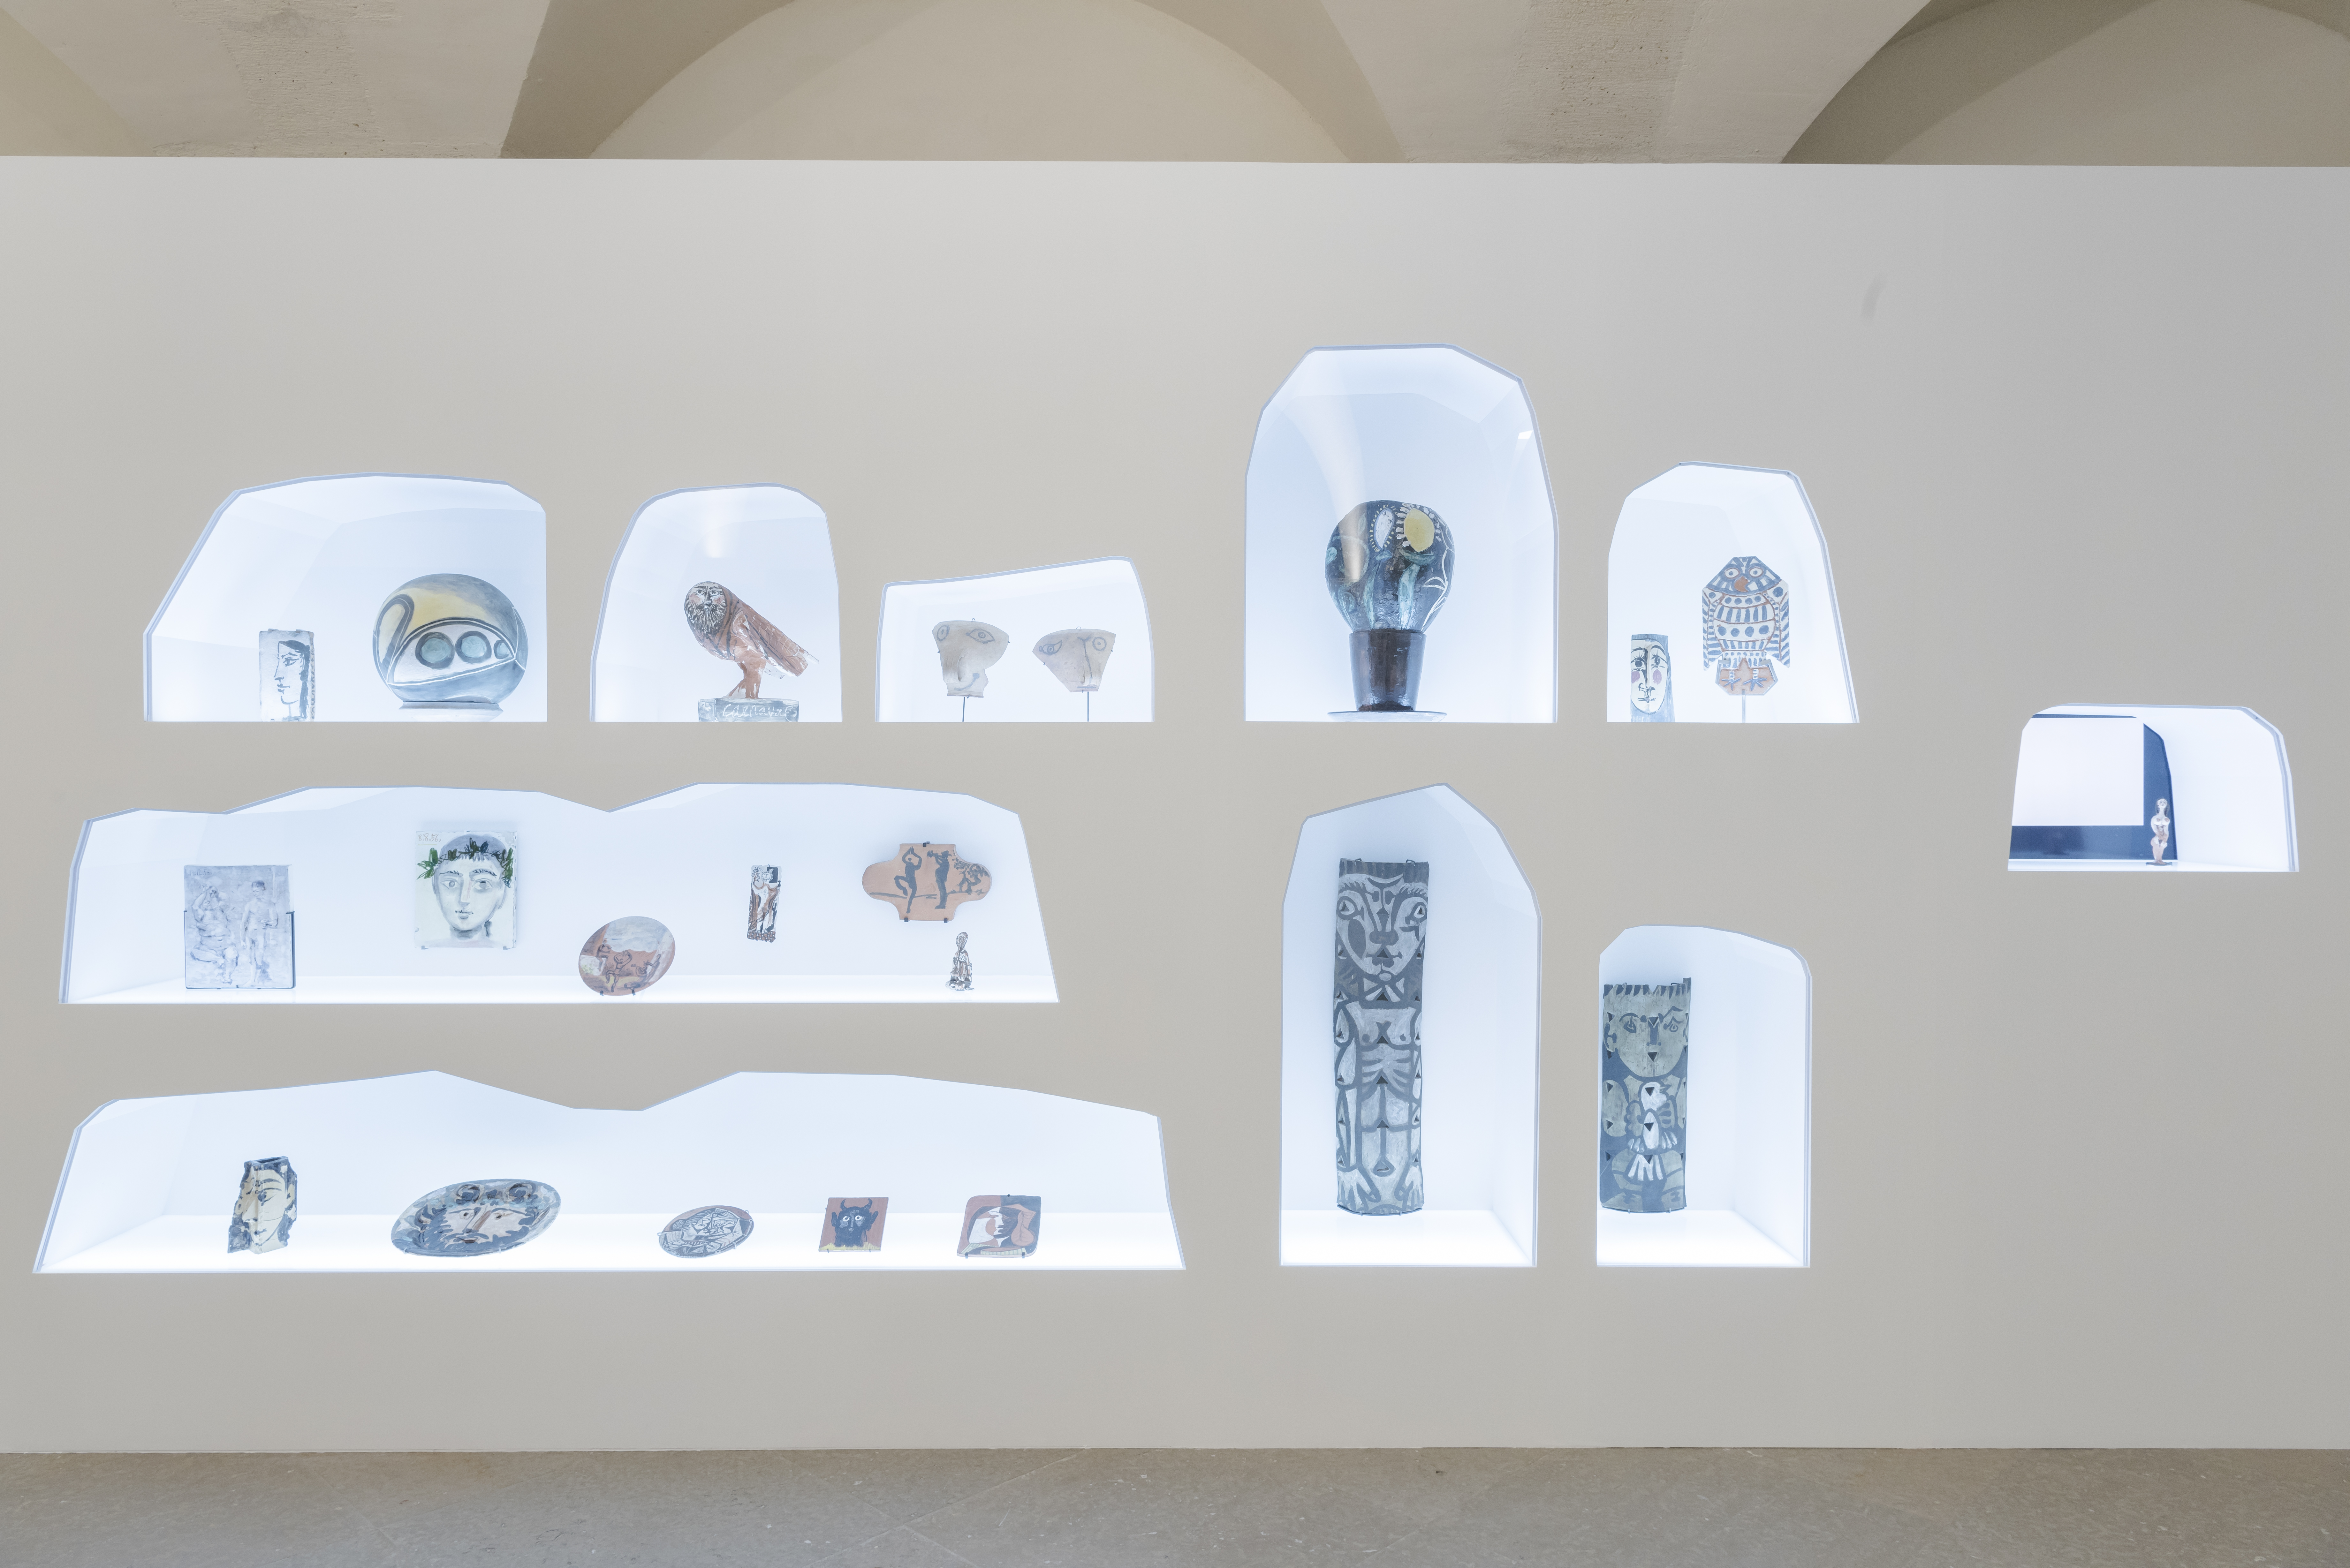 Salles de l'exposition Picasso obstinément méditerranéen